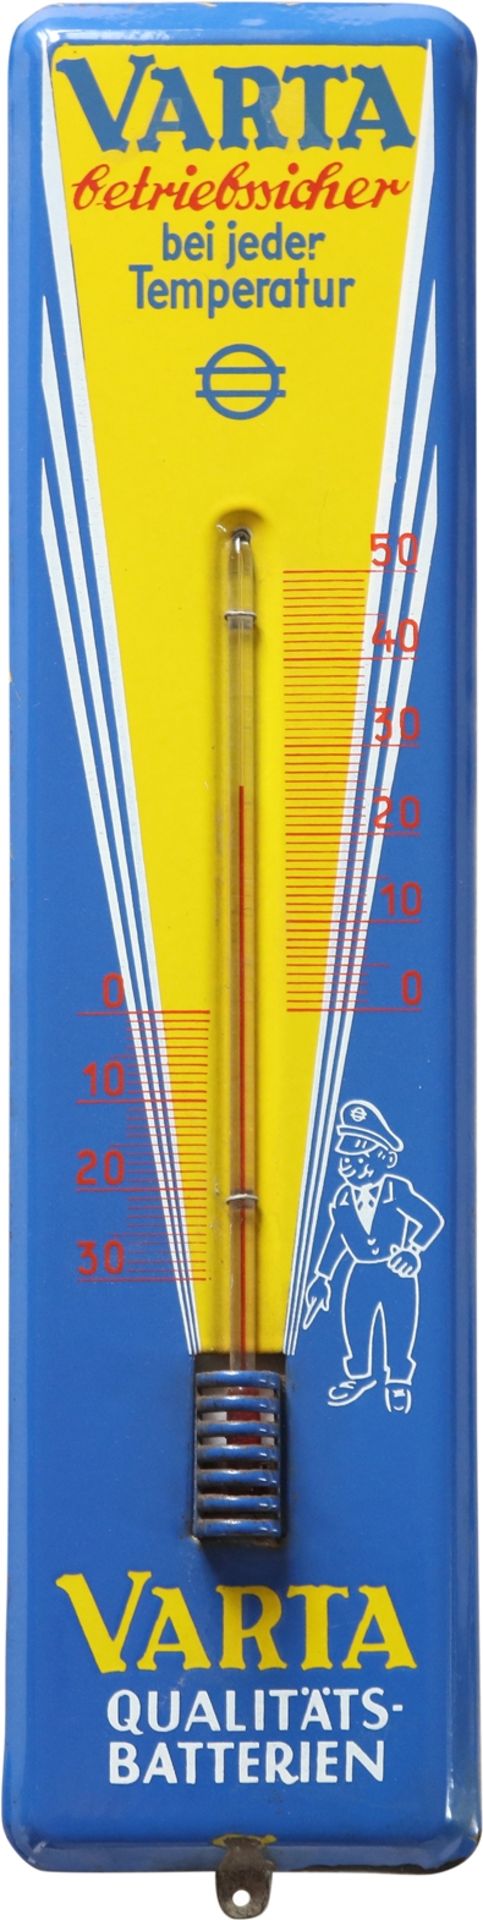 Emailschild Thermometer Varta Batterien, Hagen-Wehringhausen, um 1960